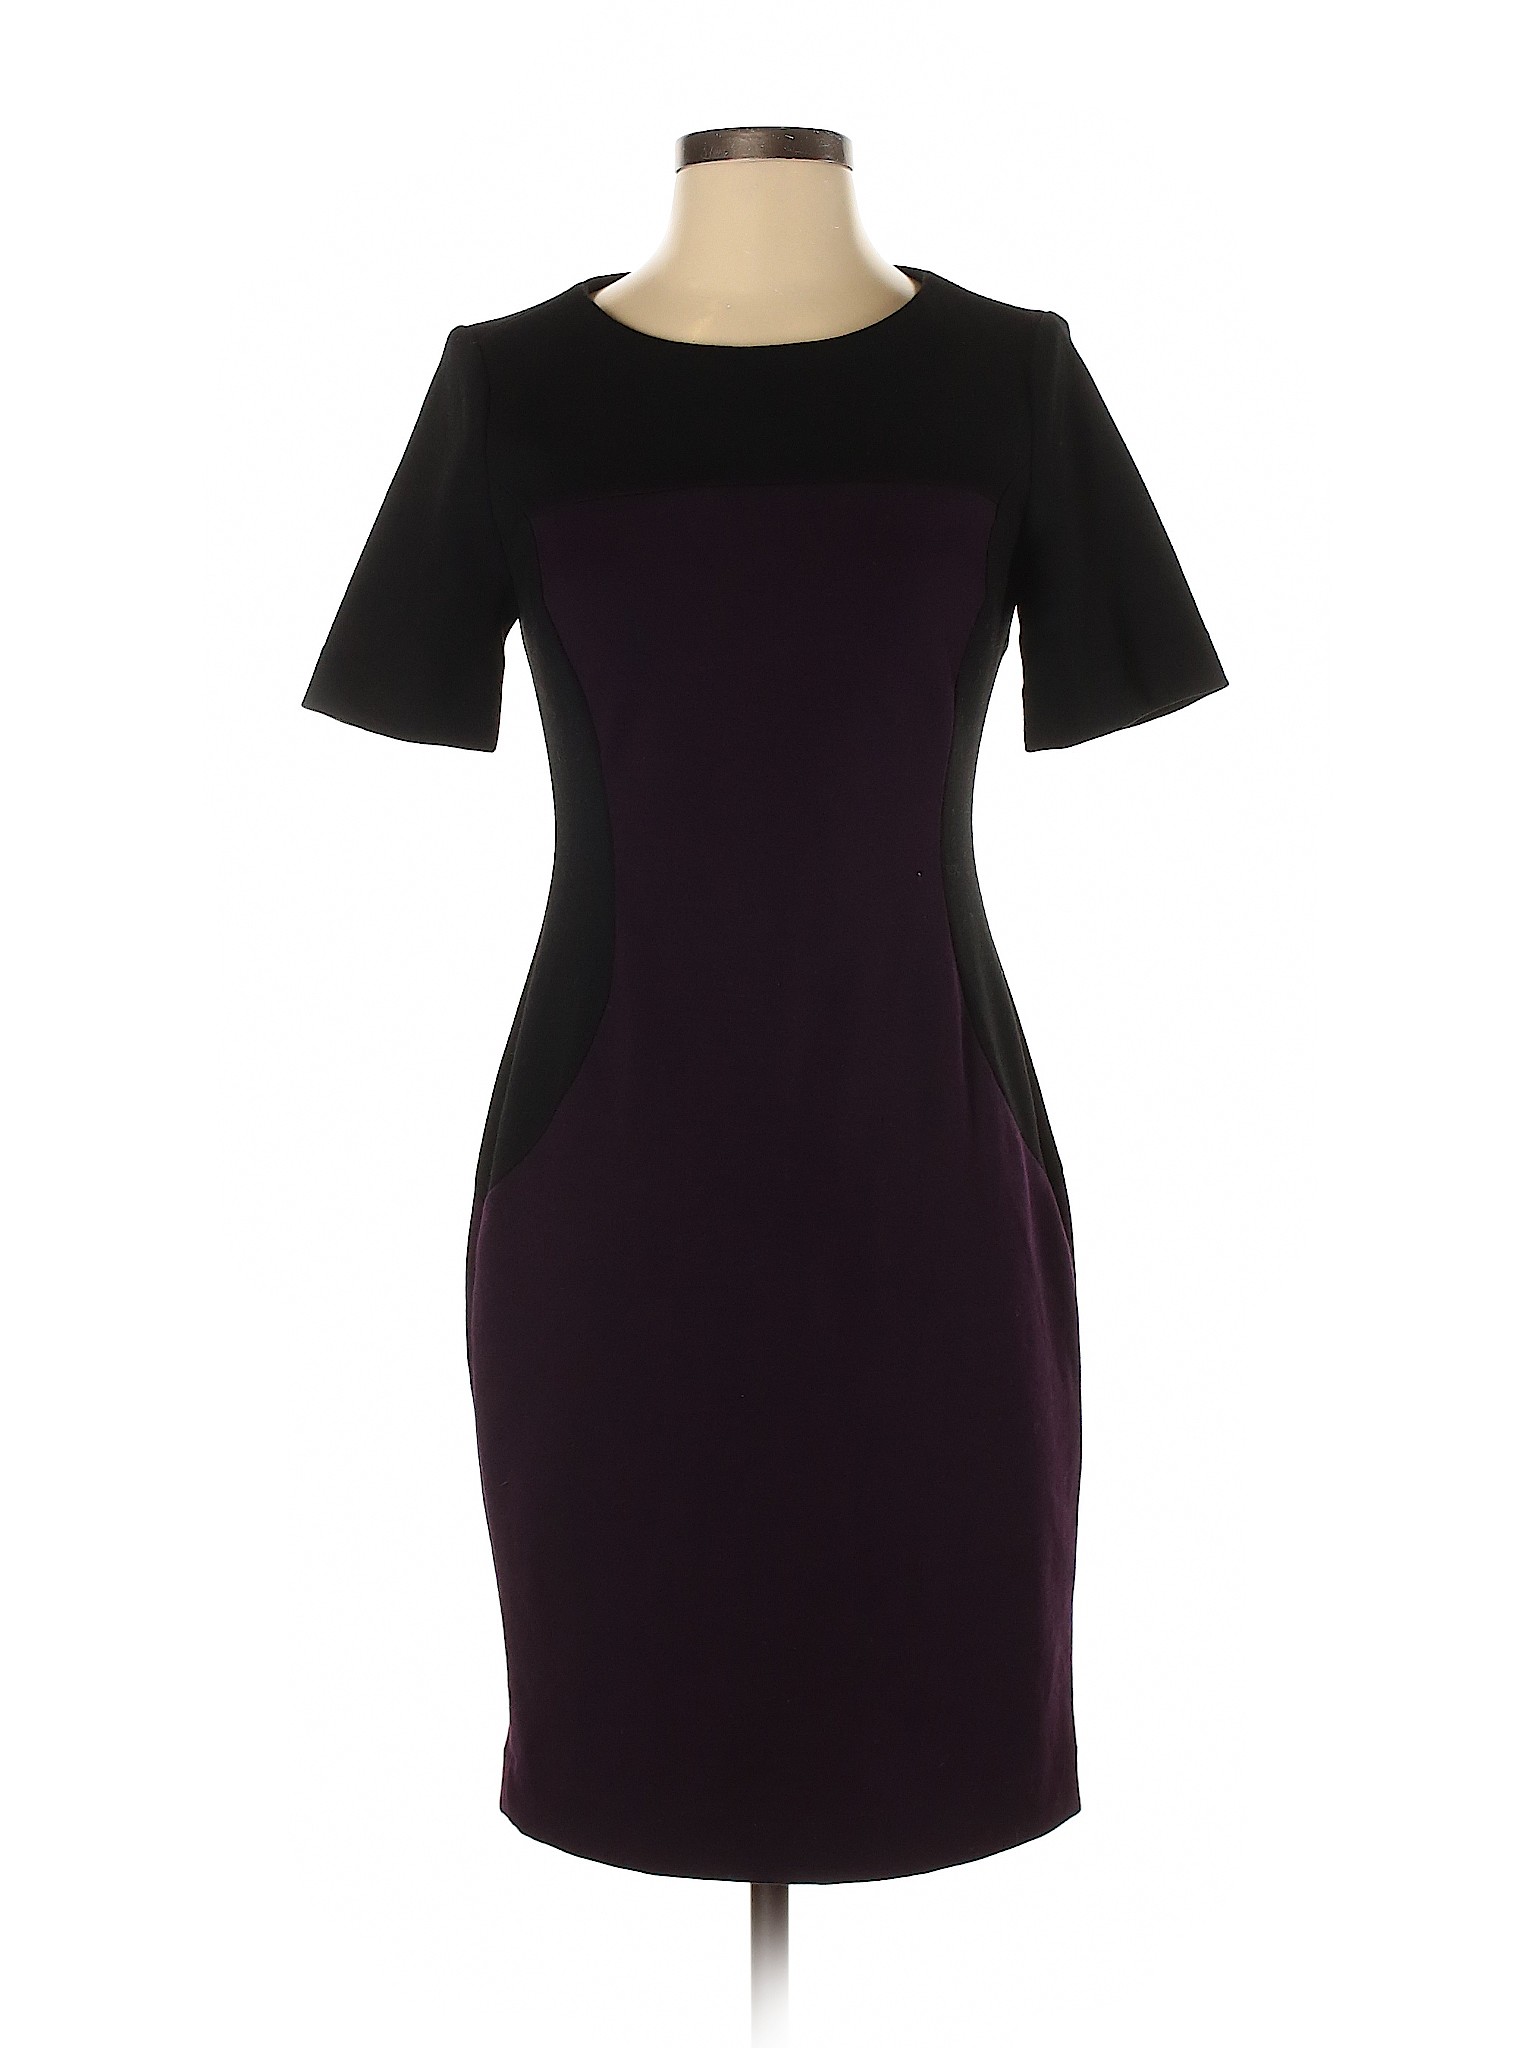 PREMISE Women Purple Casual Dress 2 | eBay